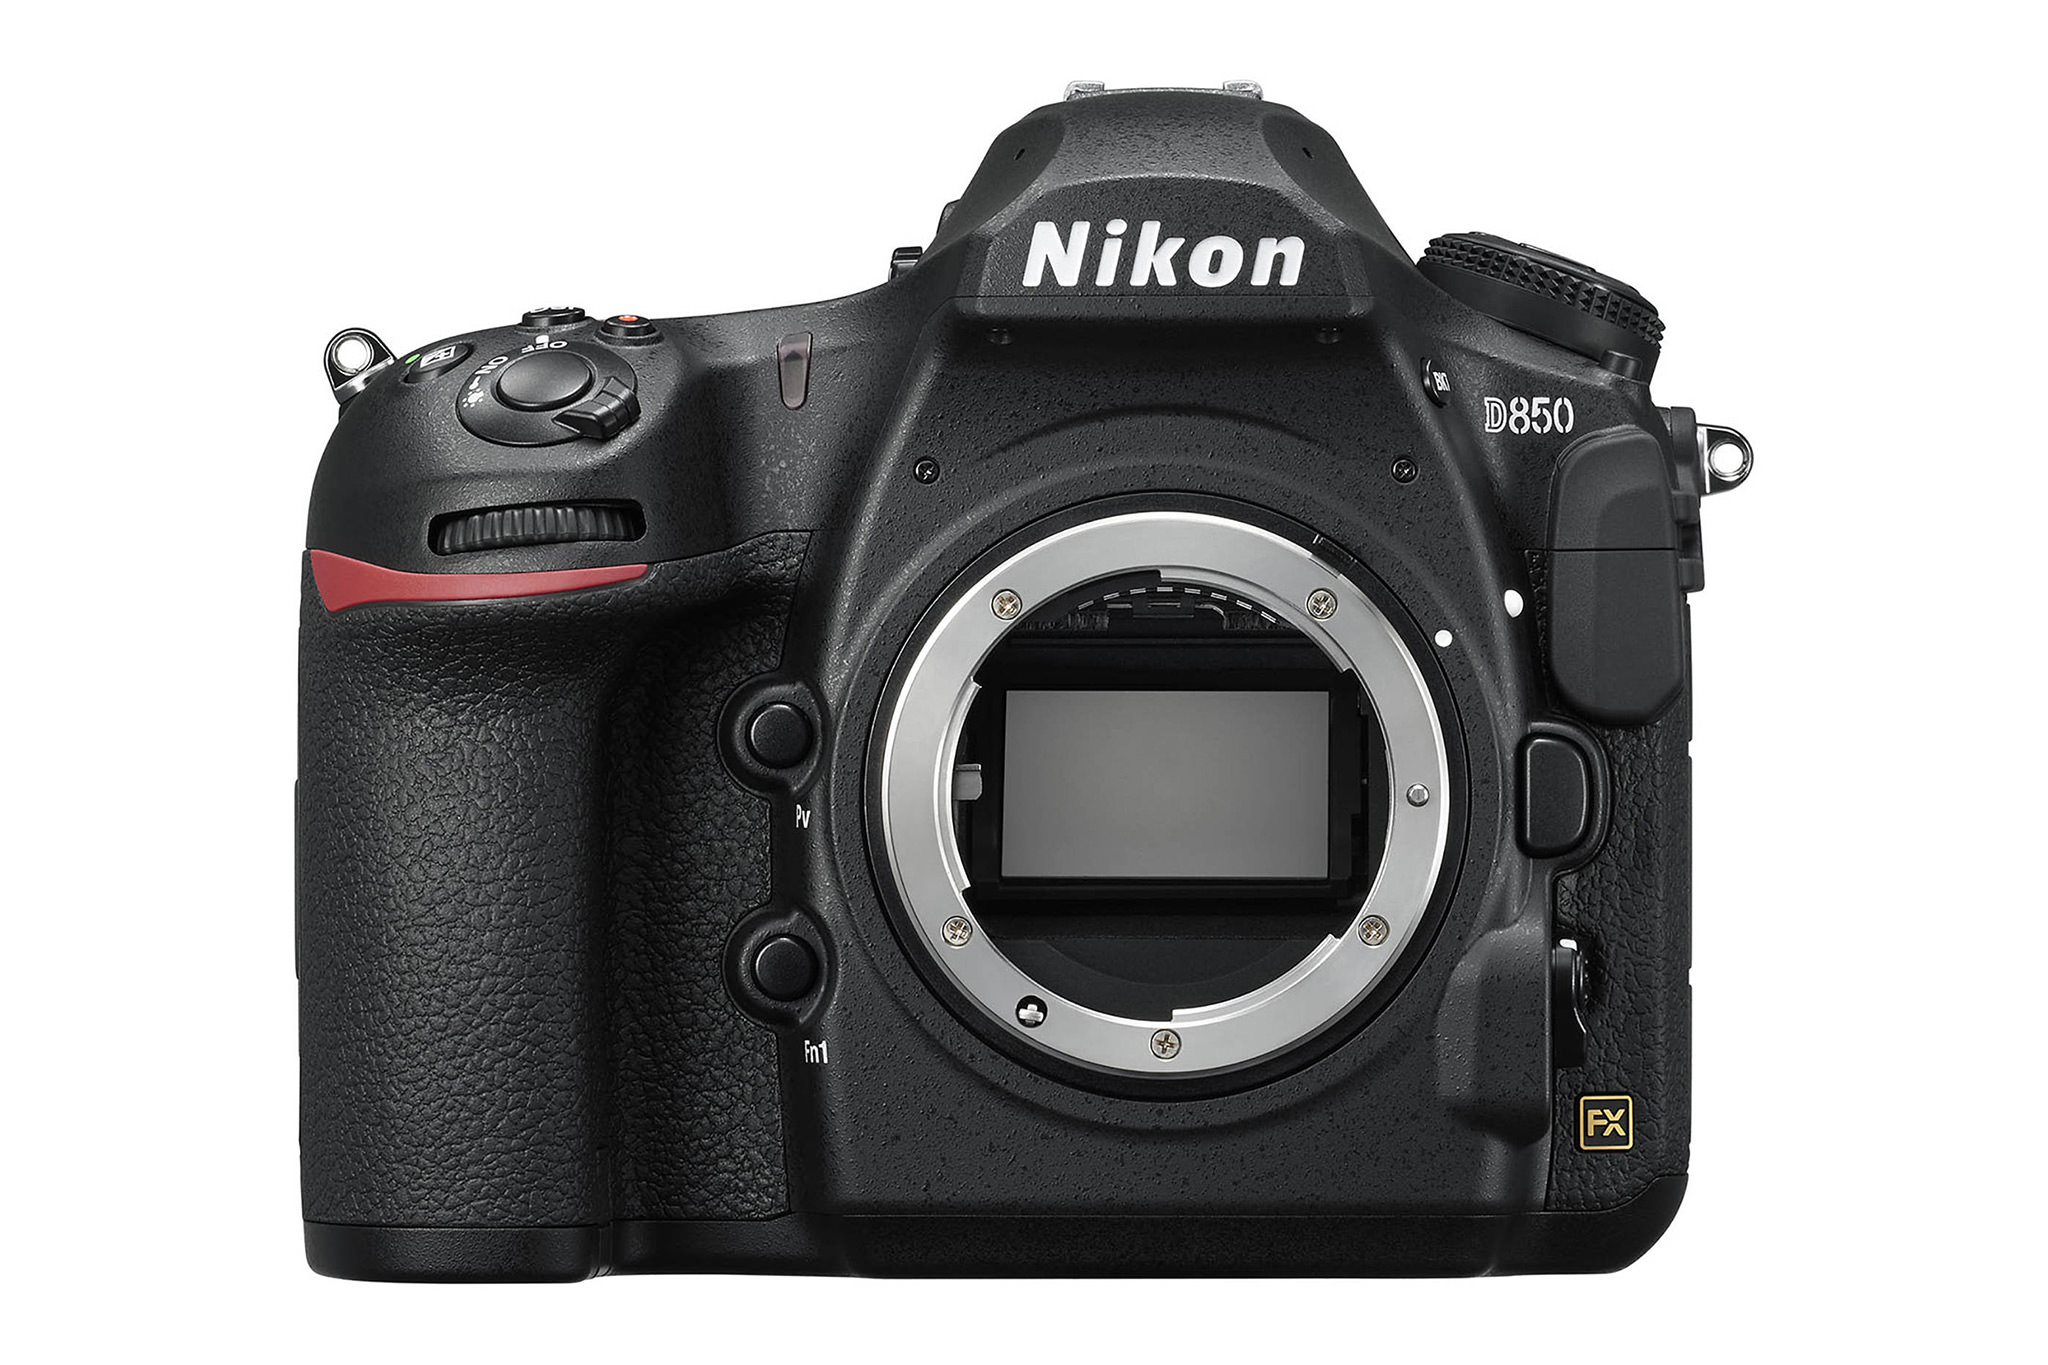 Insist logic Capillaries Nikon D850 Review